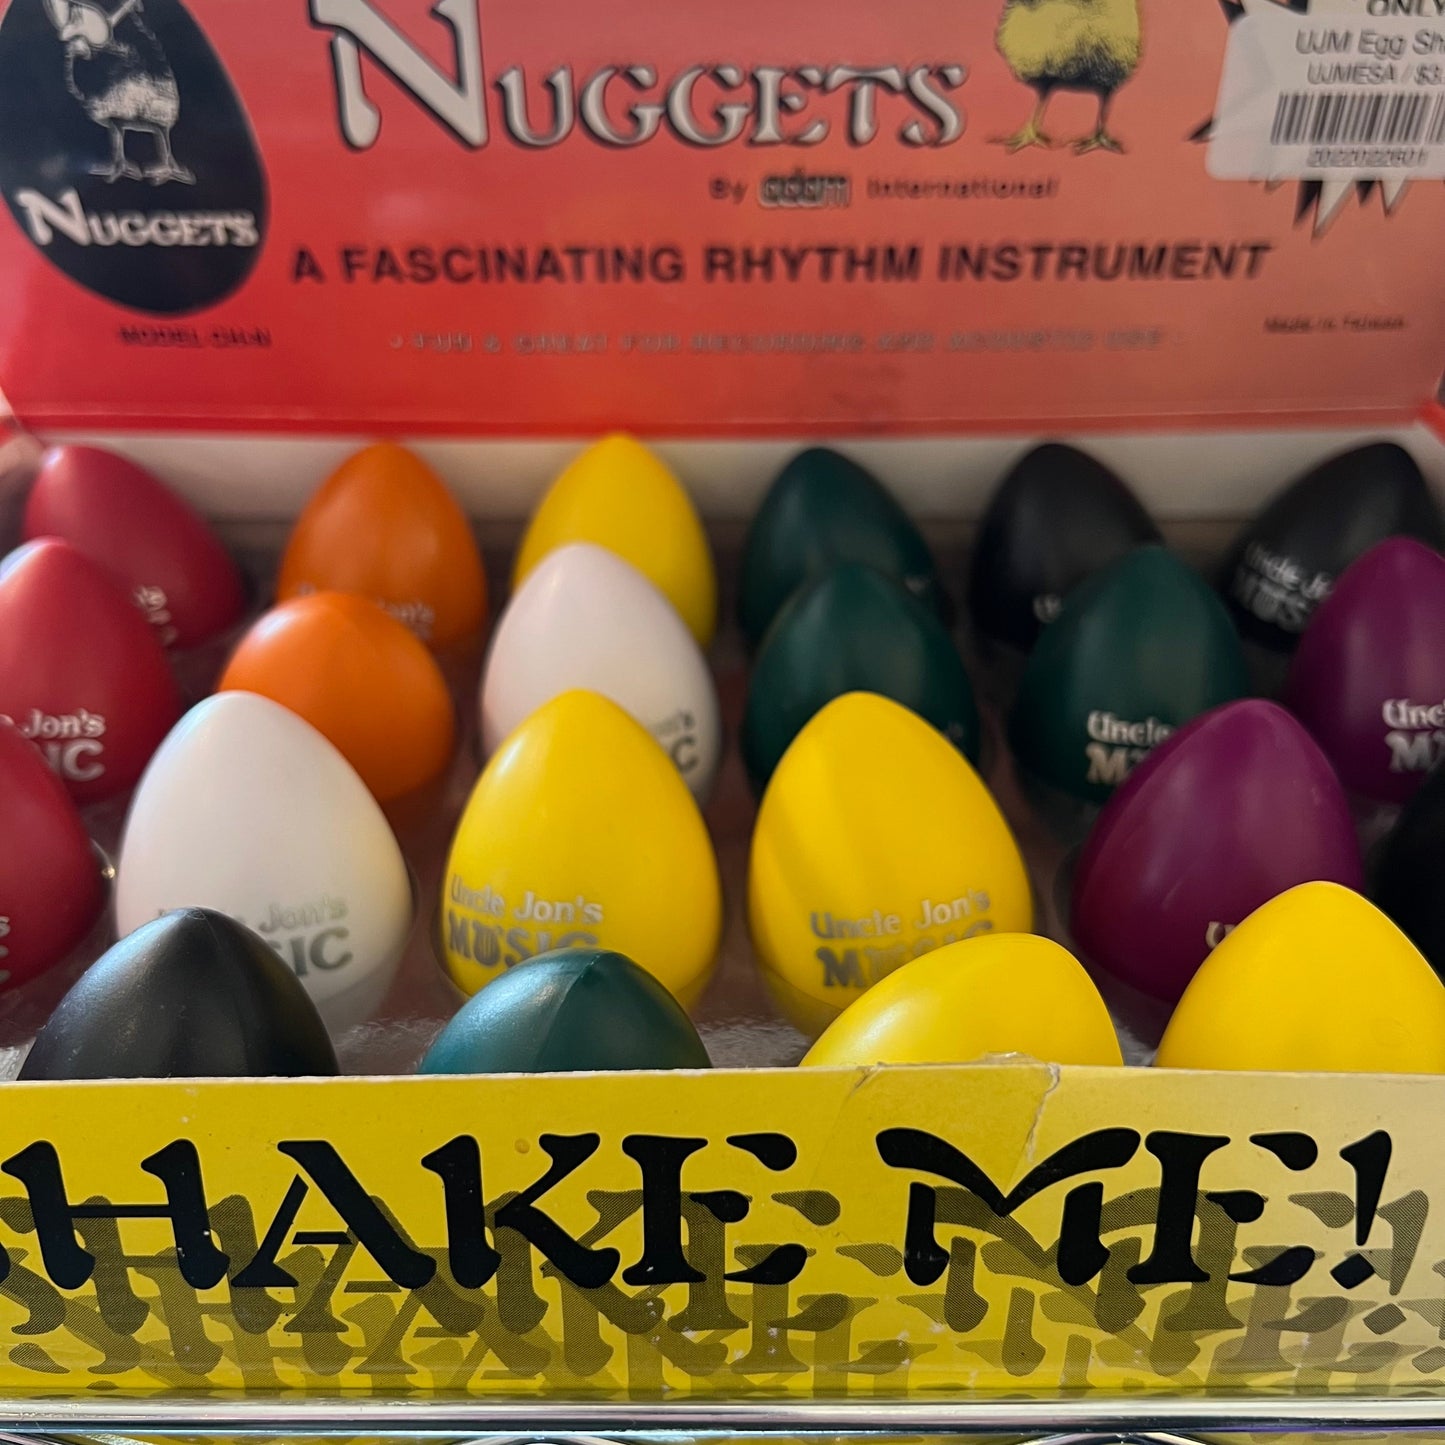 UJM Egg Shaker